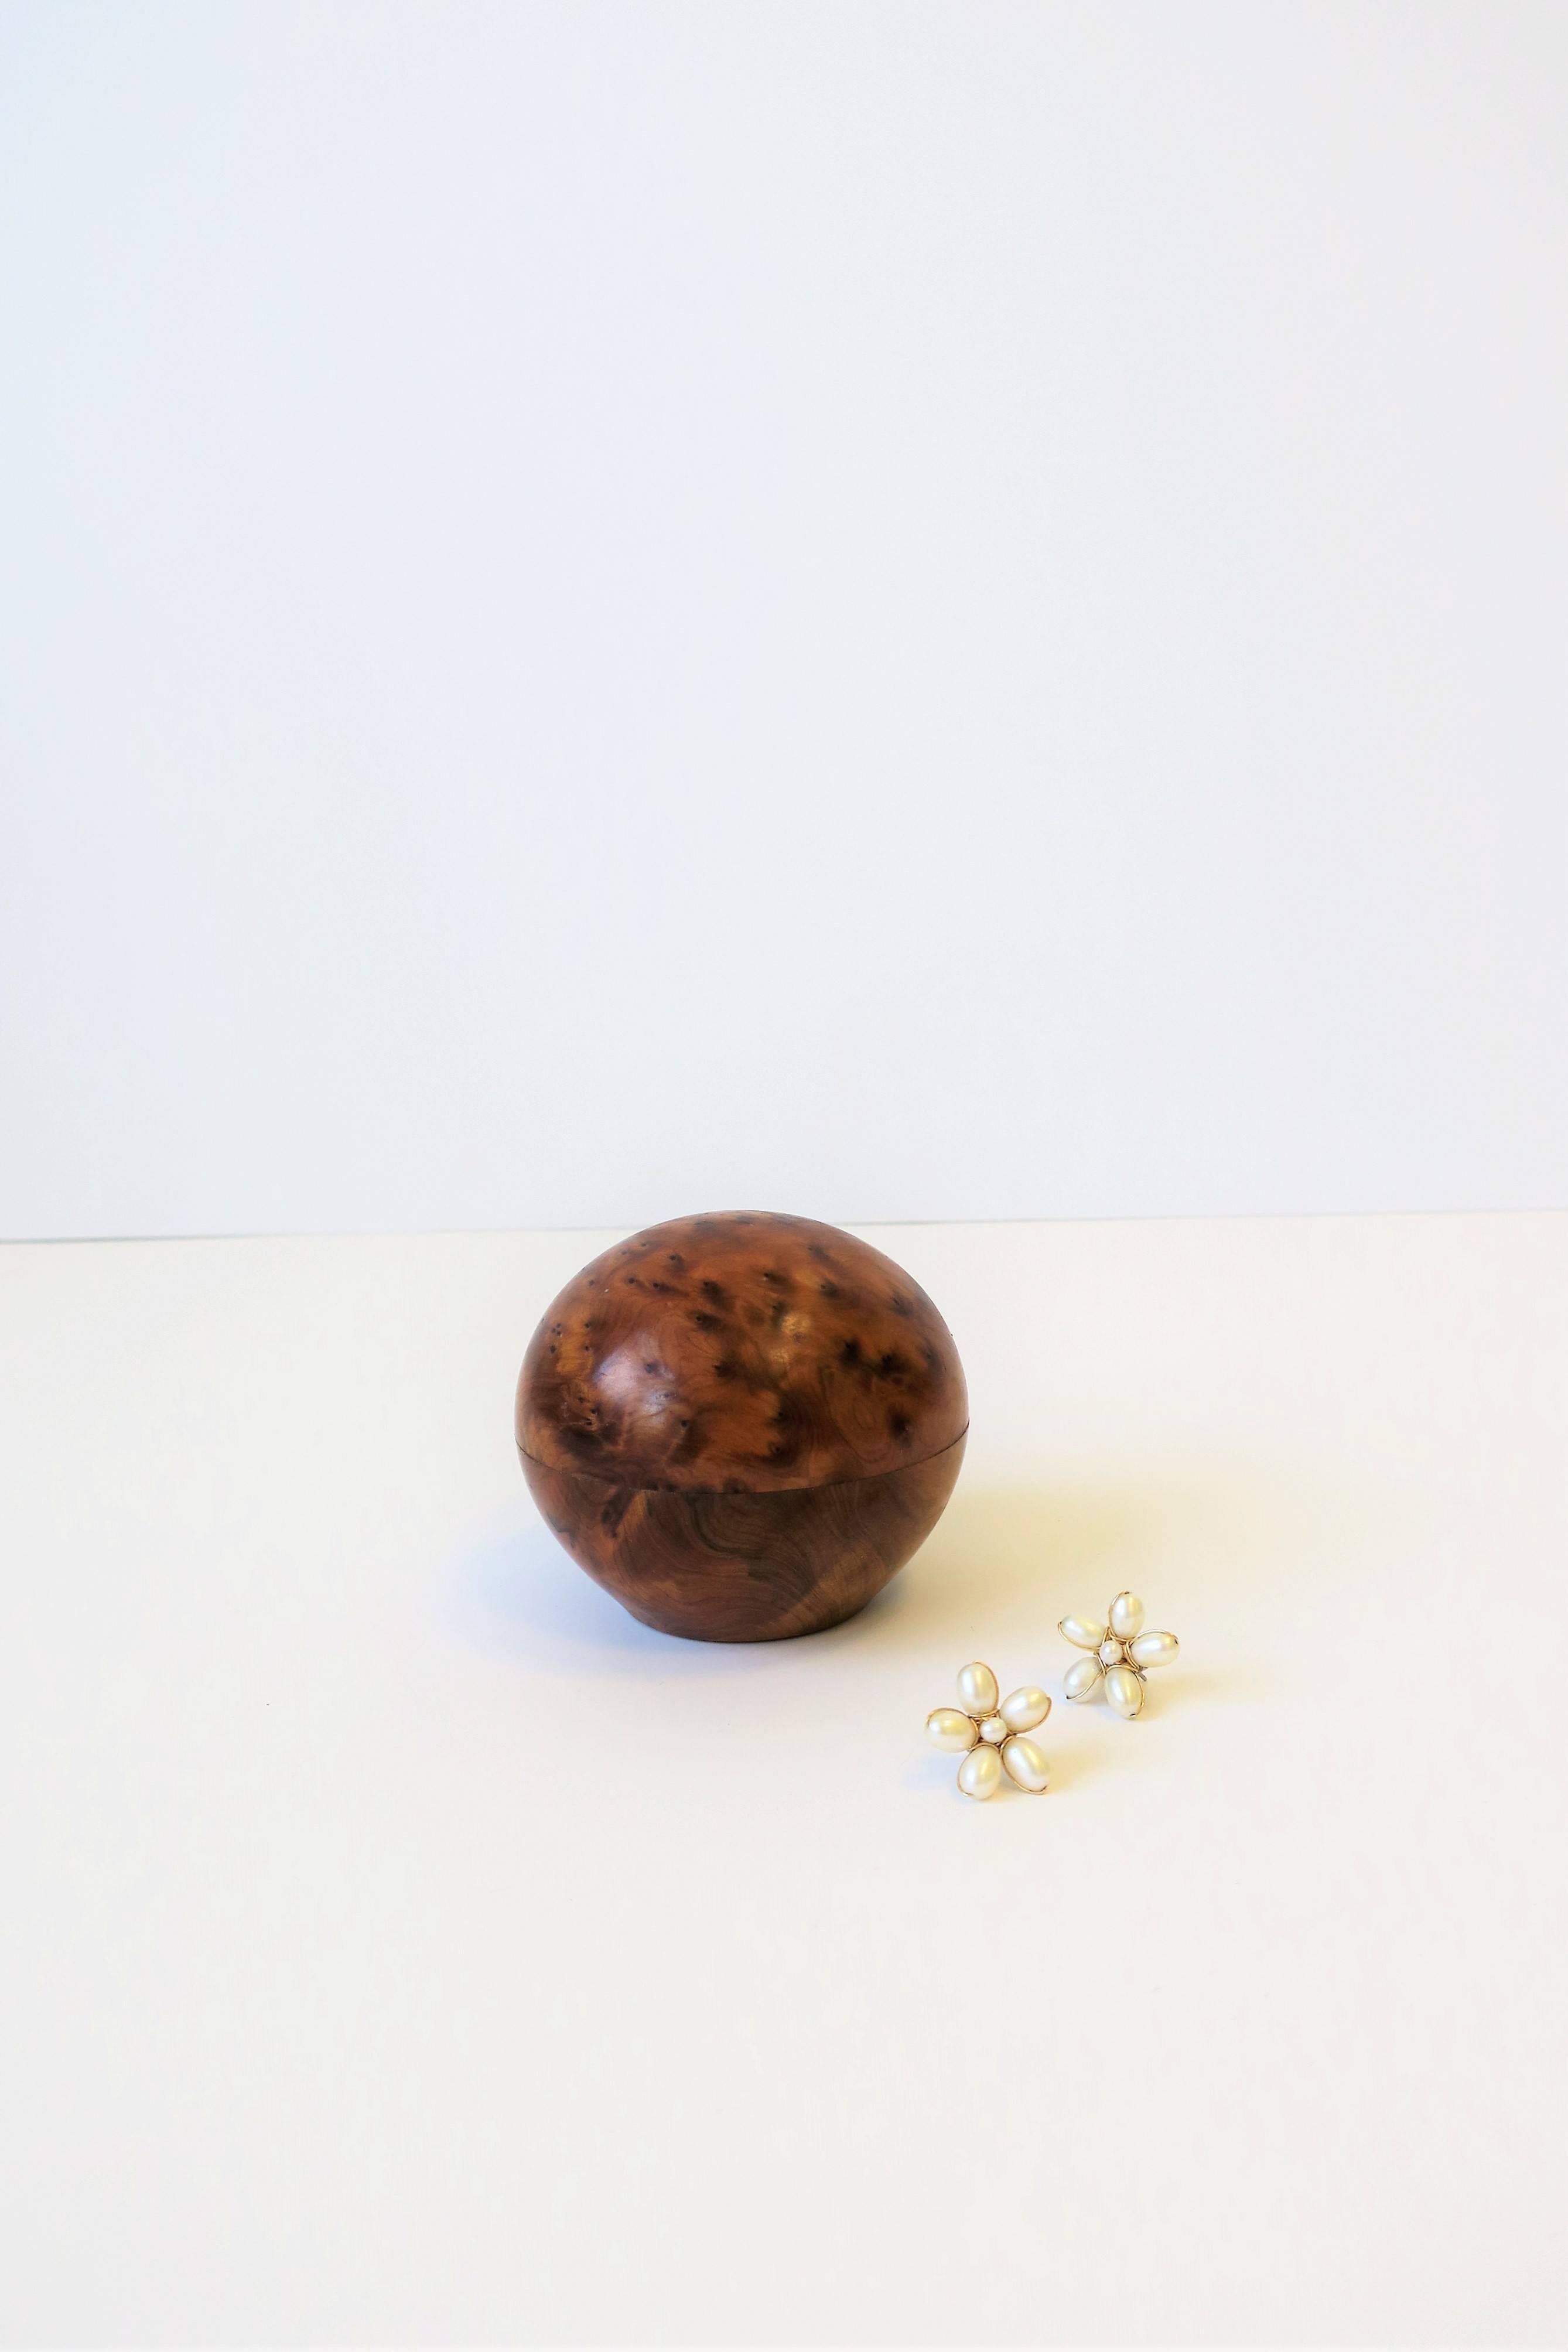 Round Burl Wood Trinket or Jewelry Box 6